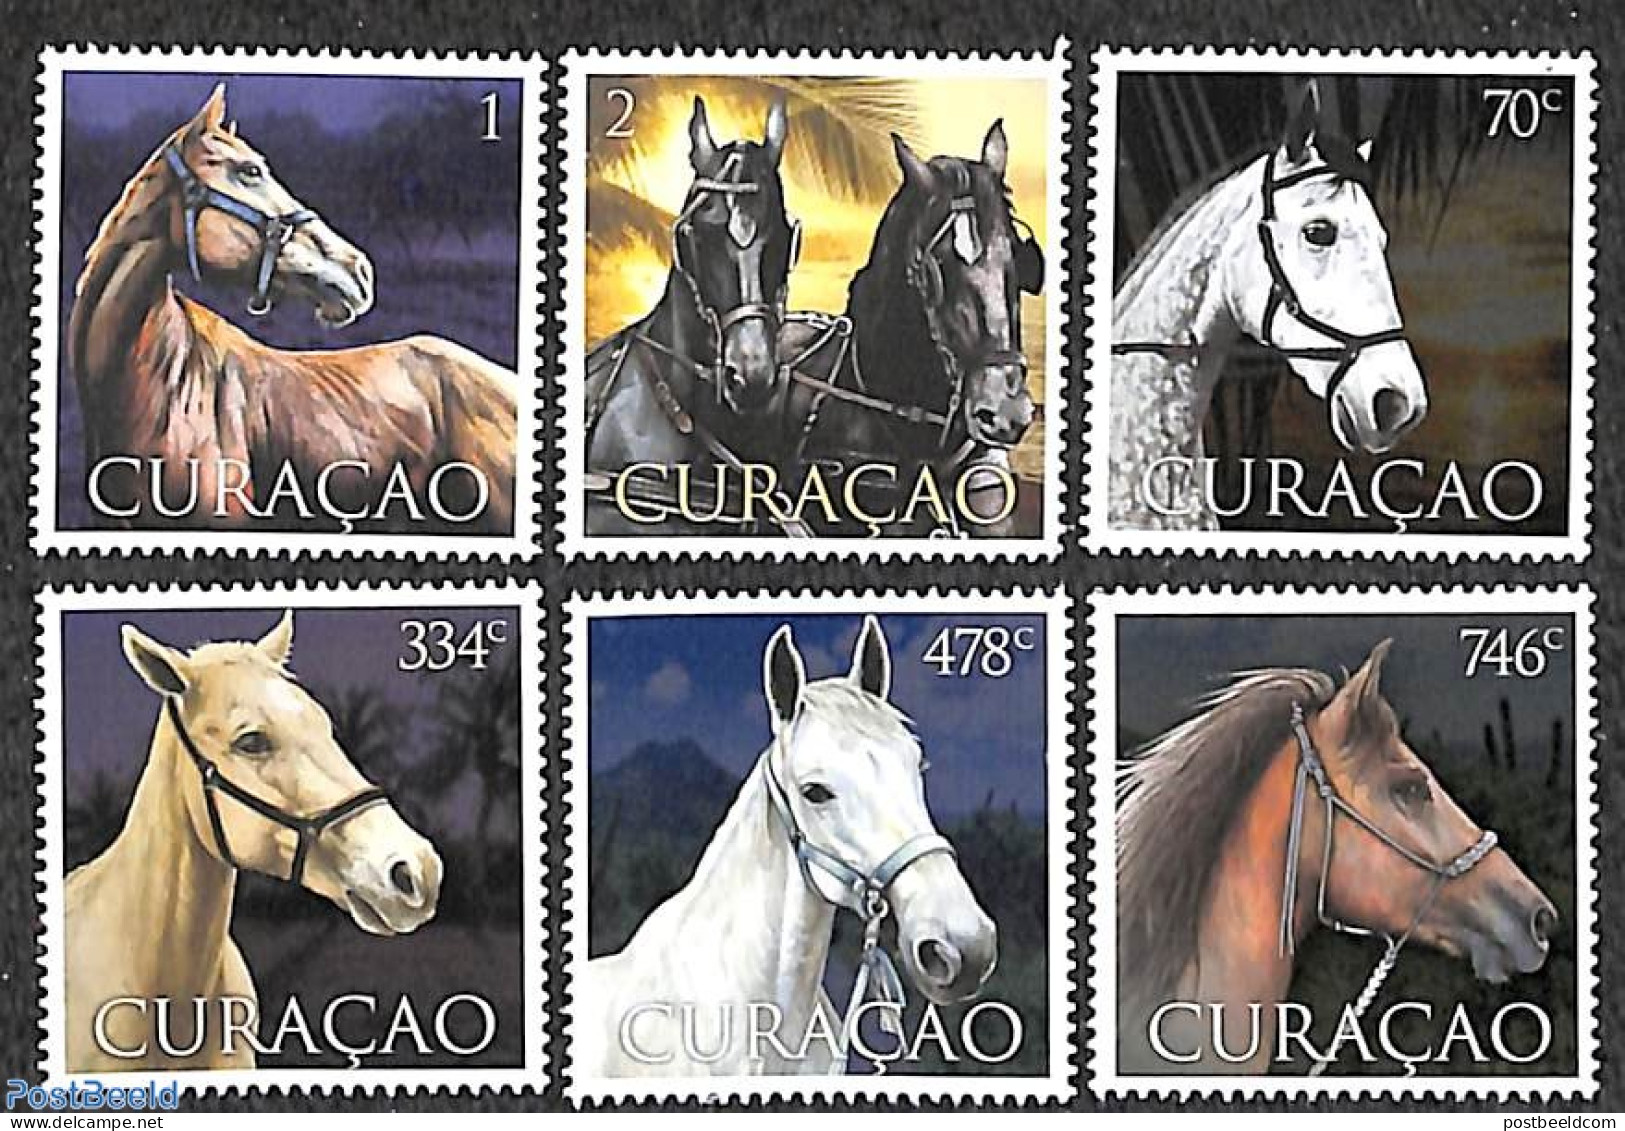 Curaçao 2021 Horses 6v, Mint NH, Nature - Horses - Curaçao, Antille Olandesi, Aruba